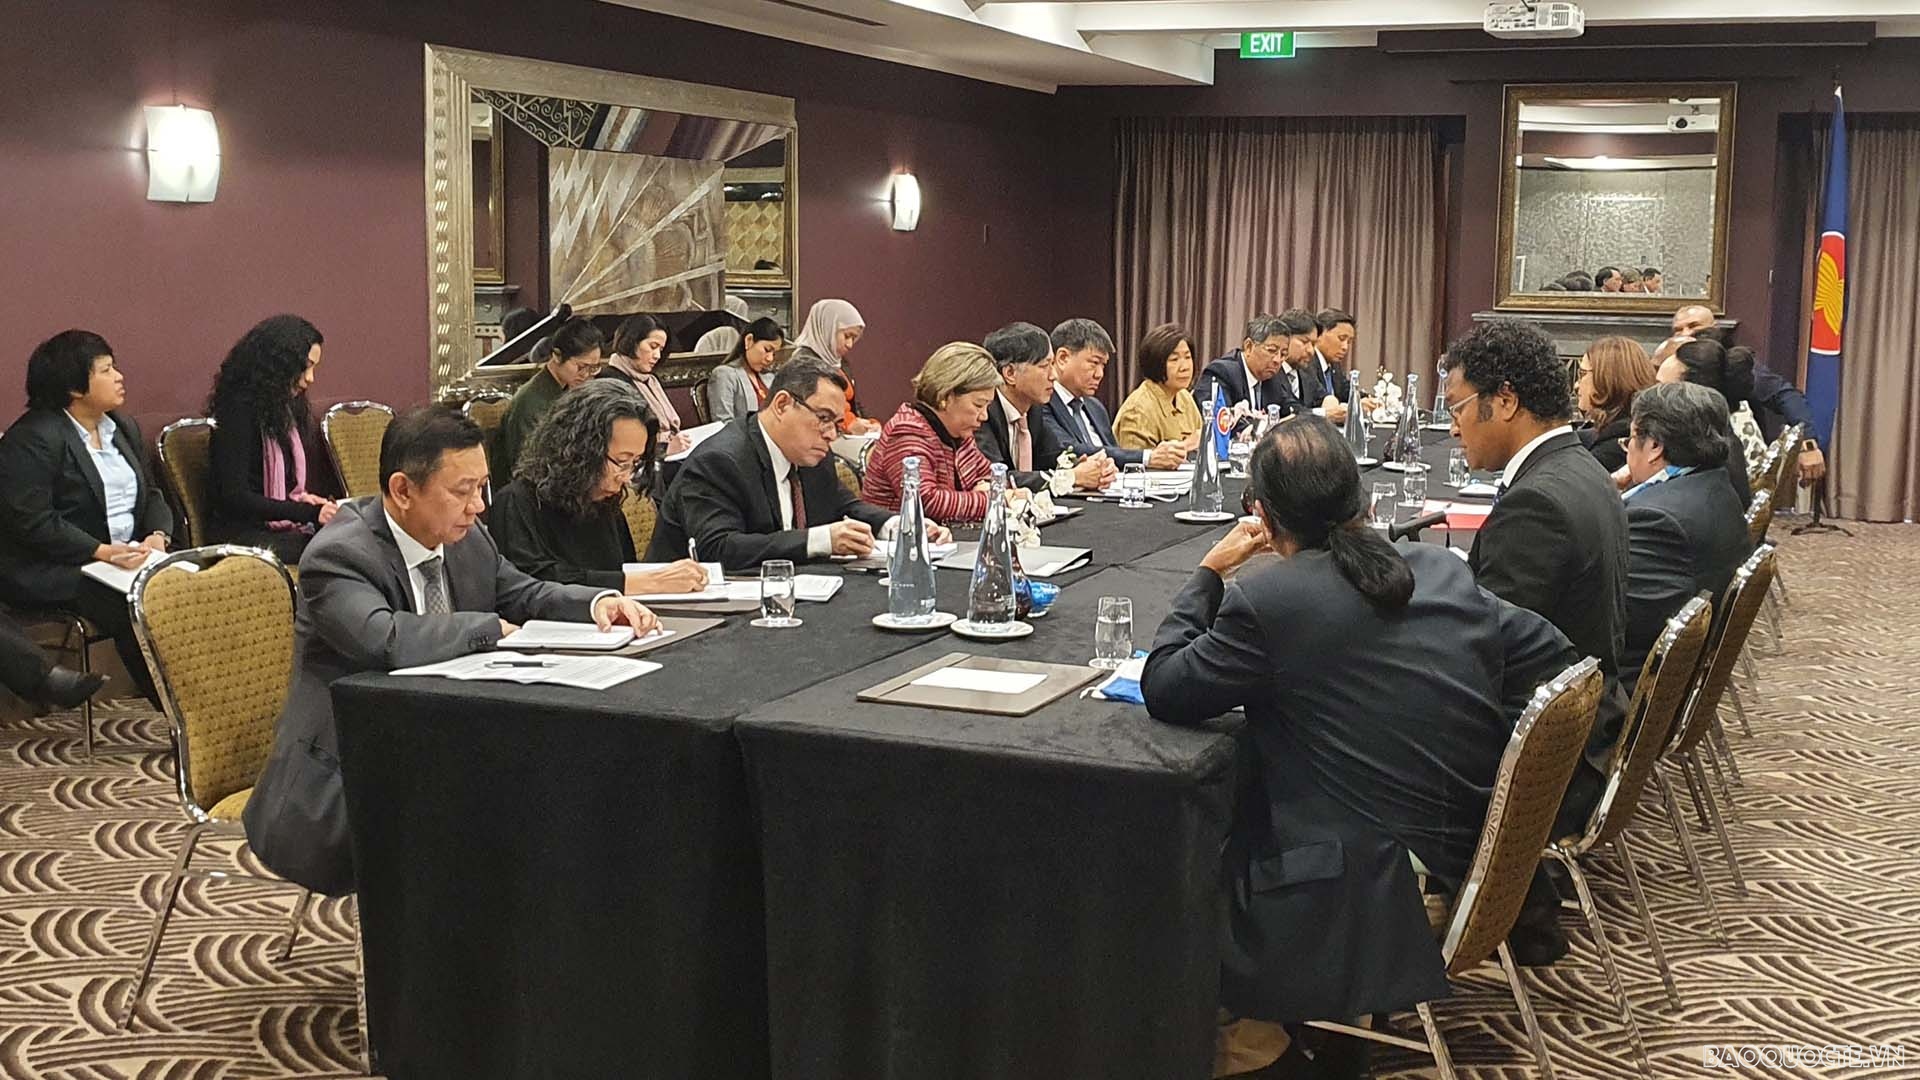 Đại sứ Nguyễn Tất Thành, Chủ tịch Ủy ban ASEAN tại Canberra chủ trì cuộc họp giữa Trưởng Cơ quan đại diện các nước ASEAN tại Canberra và các quốc đảo Thái Bình Dương nhằm trao đổi về vấn đề lao động. 